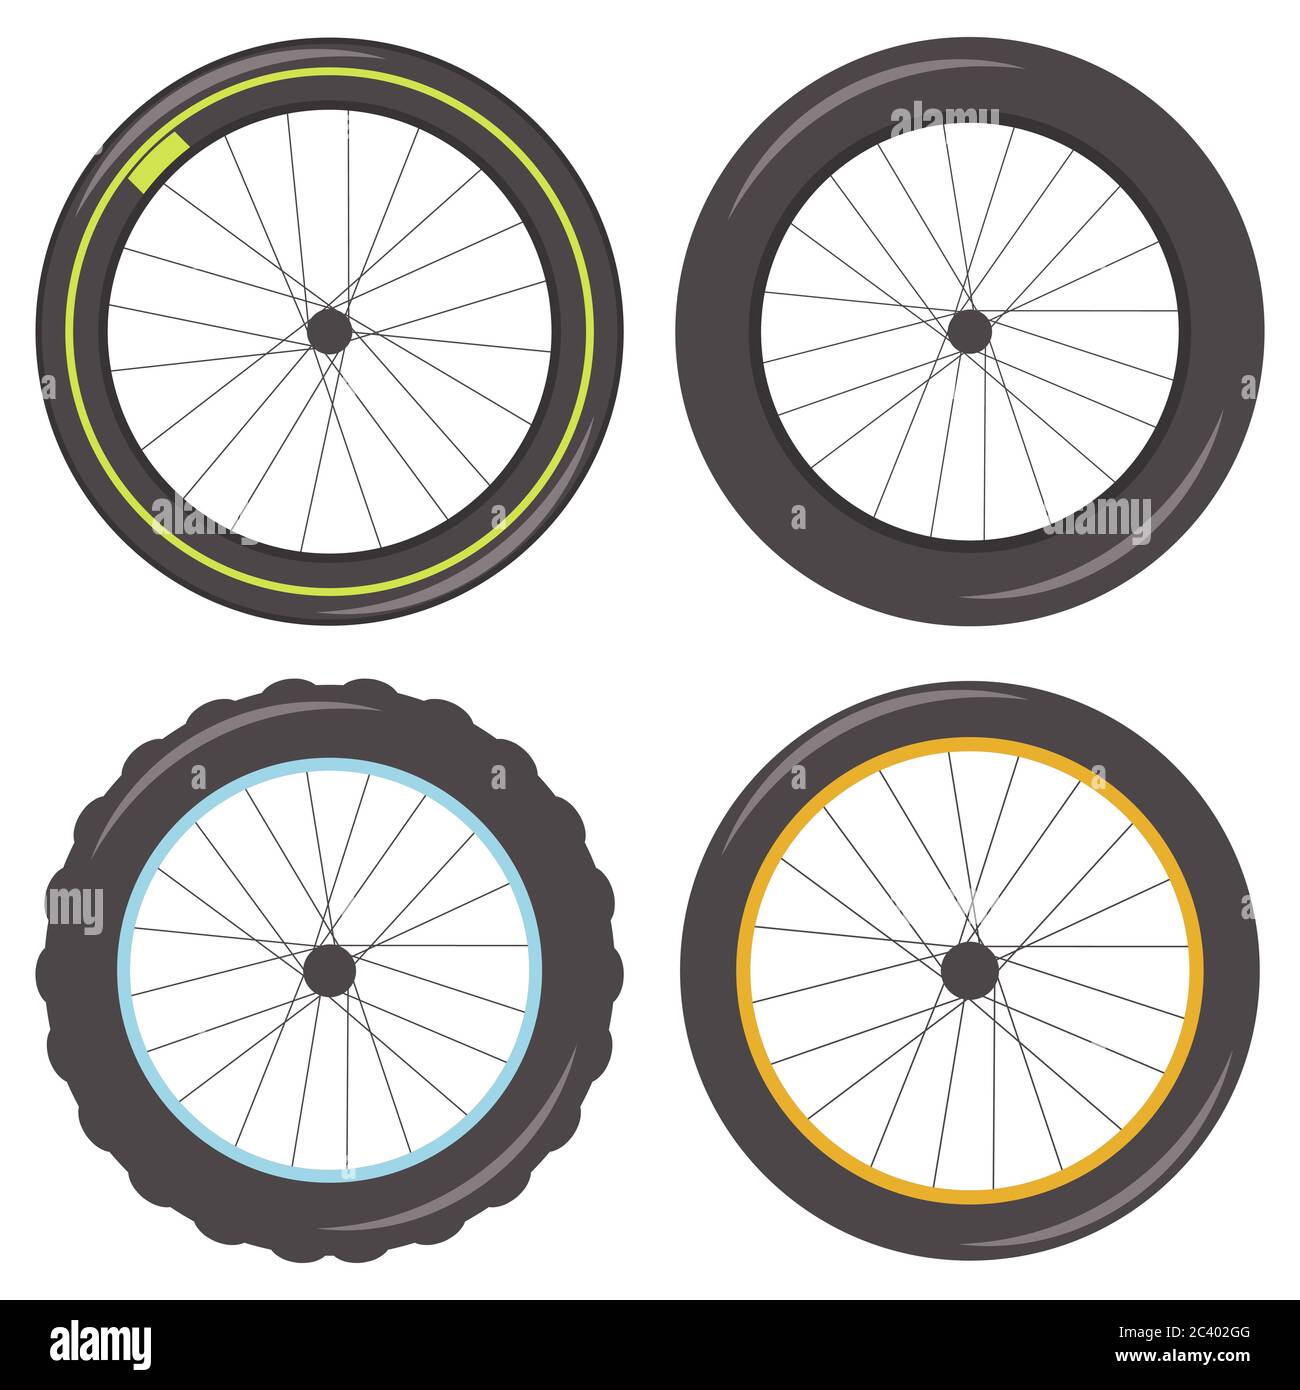 Roue de vélo avec rayons de différents types: Sport, graisse, clouté et classique pneu. Icônes vectorielles isolées sur fond blanc. Illustration de Vecteur